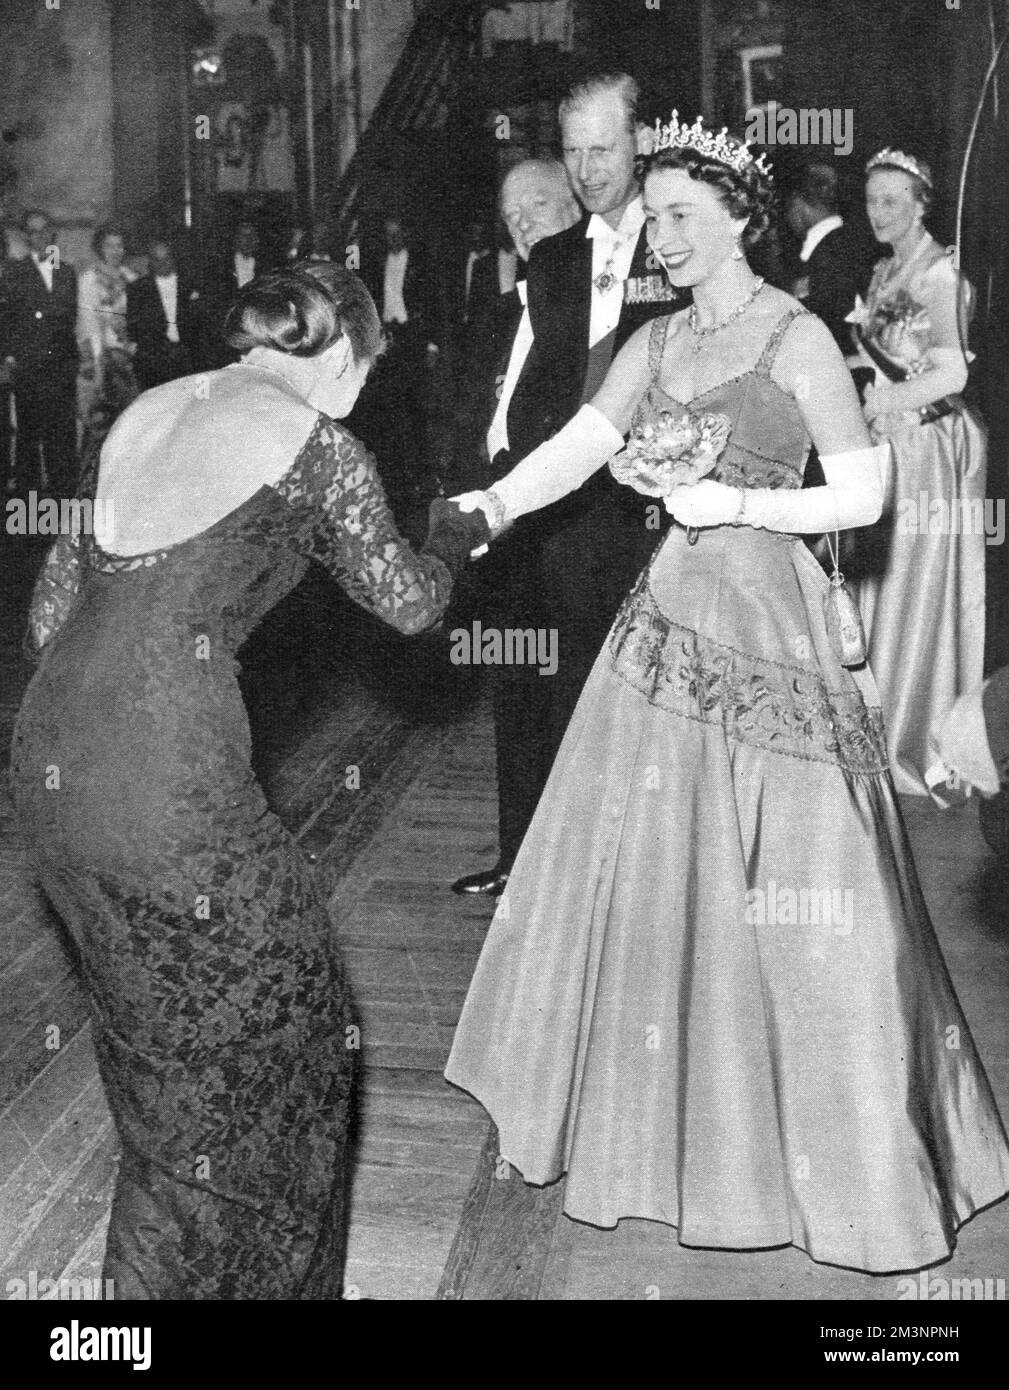 Die Opernsängerin Maria Meneghini Callas trifft Königin Elizabeth II., nachdem sie eine Szene aus Bellinis Oper I Puritani gesungen hat, die Teil einer Galaveranstaltung anlässlich der hundertjährigen Feier des Covent Garden Theatre war. Datum: 1958 Stockfoto